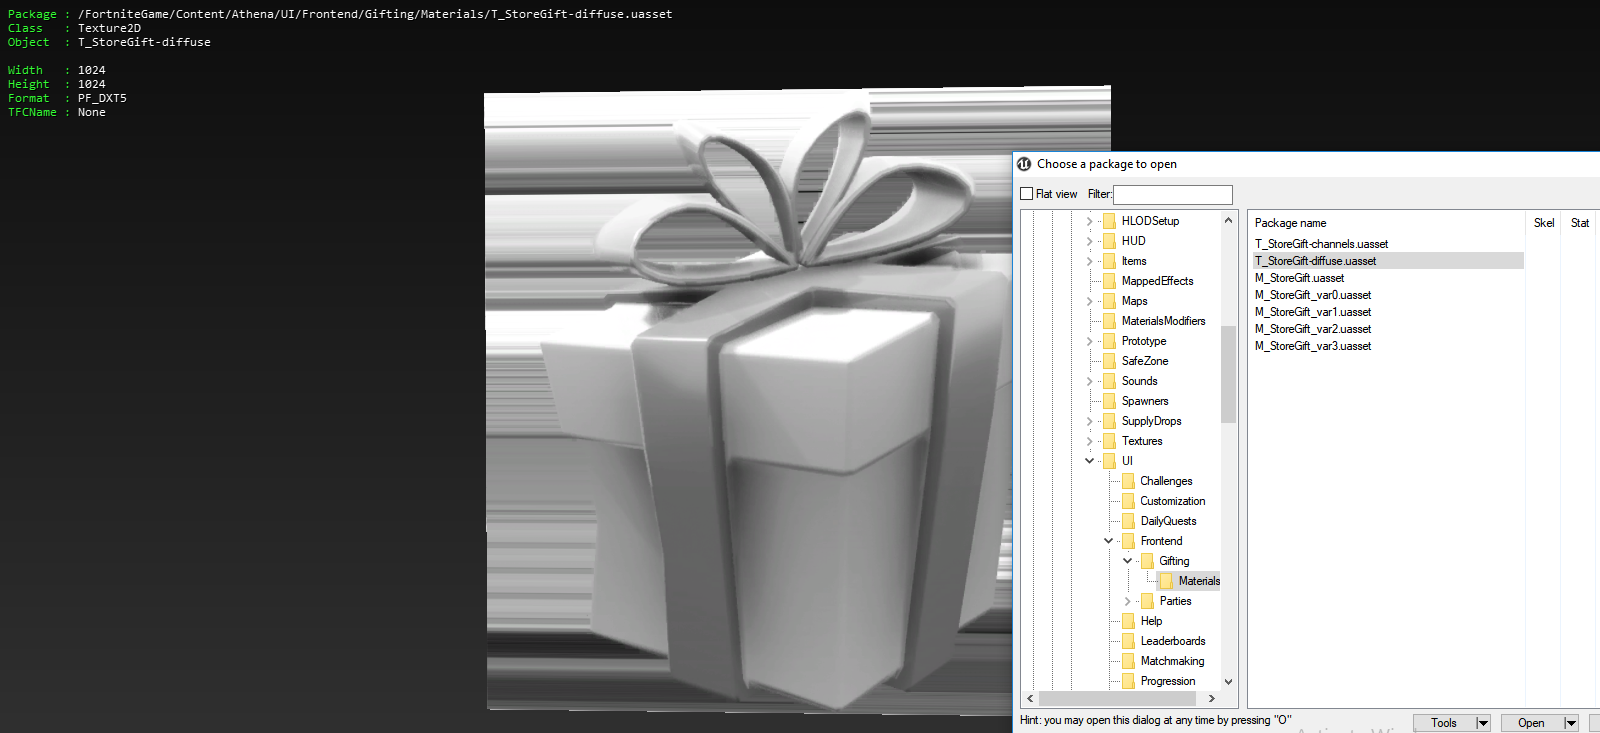 capture d ecran des fichiers datamines - fortnite comment donner des cadeaux